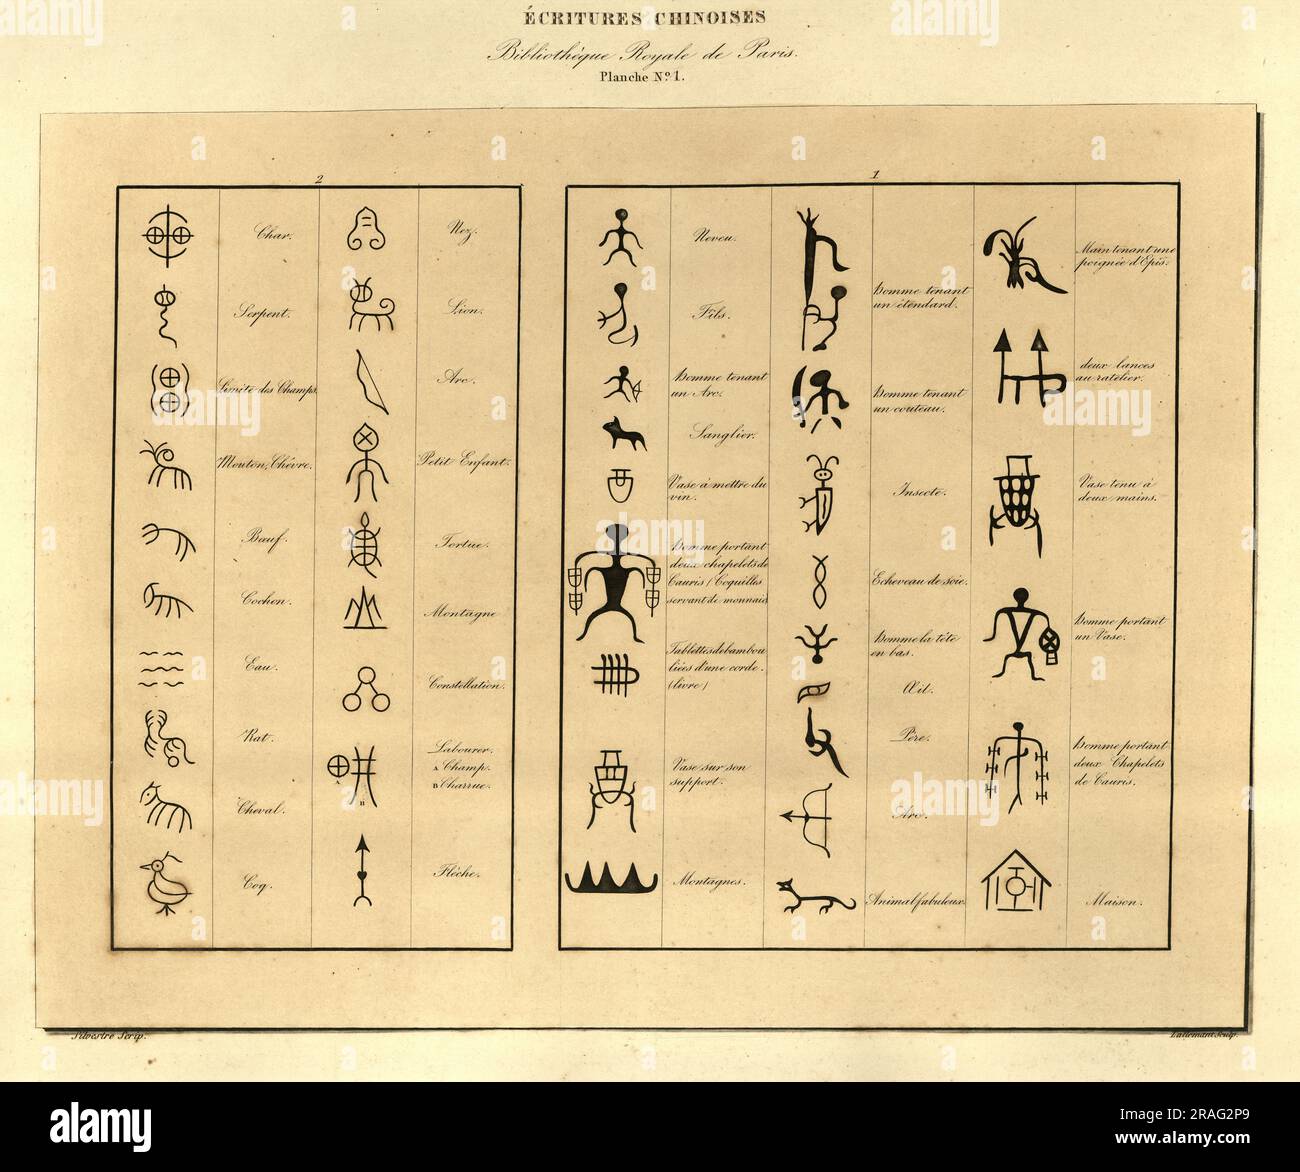 Illustrazione d'epoca di esempi della prima scrittura cinese, Universal paleography, J B Silvestre Foto Stock